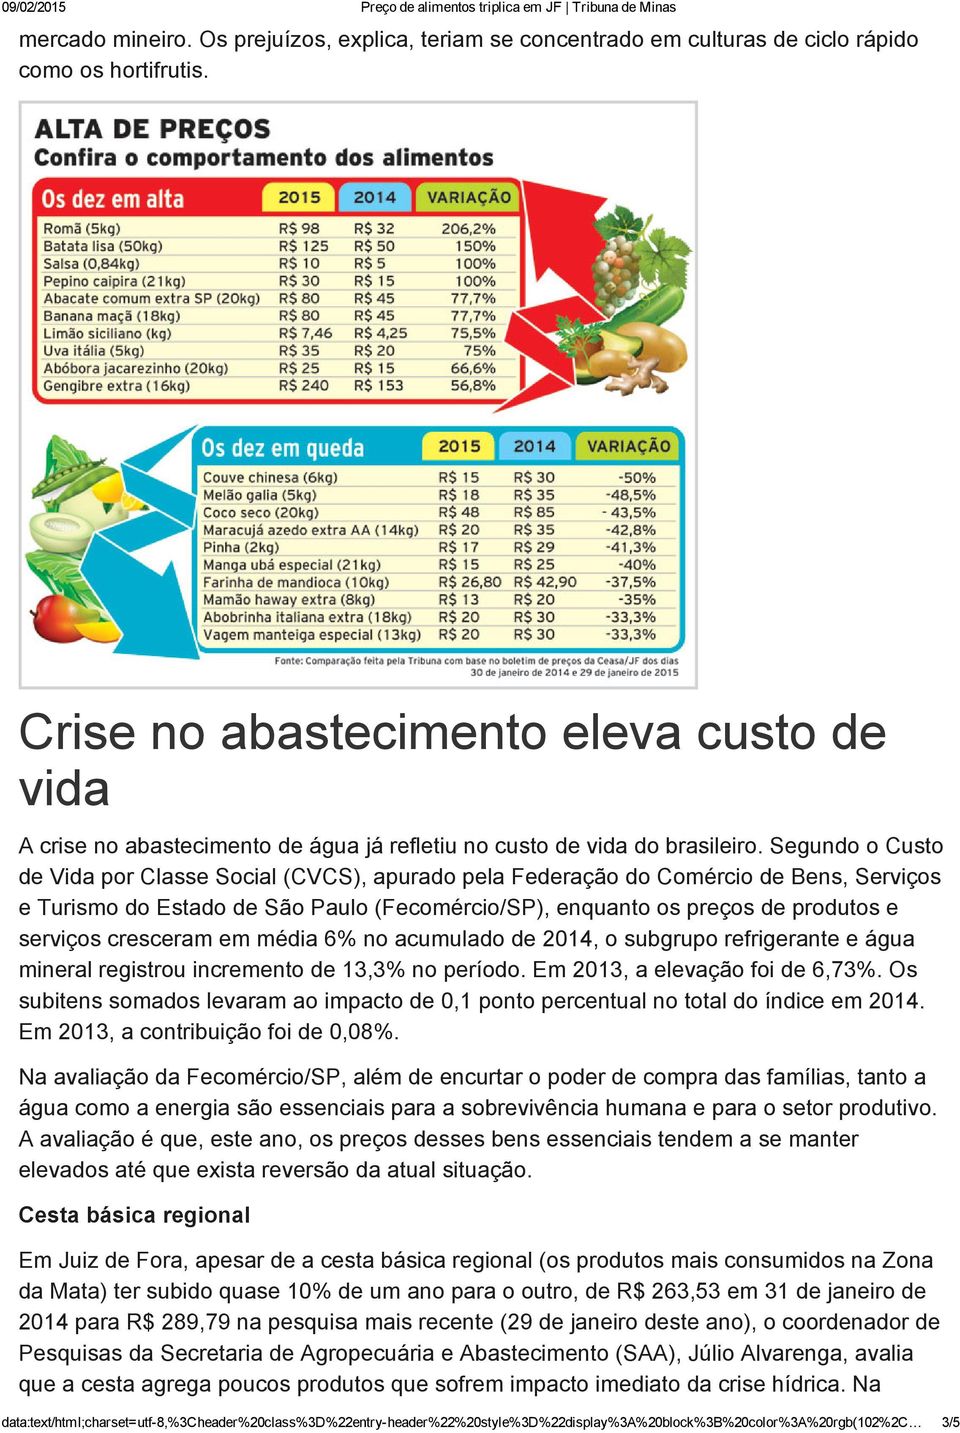 Segundo o Custo de Vida por Classe Social (CVCS), apurado pela Federação do Comércio de Bens, Serviços e Turismo do Estado de São Paulo (Fecomércio/SP), enquanto os preços de produtos e serviços